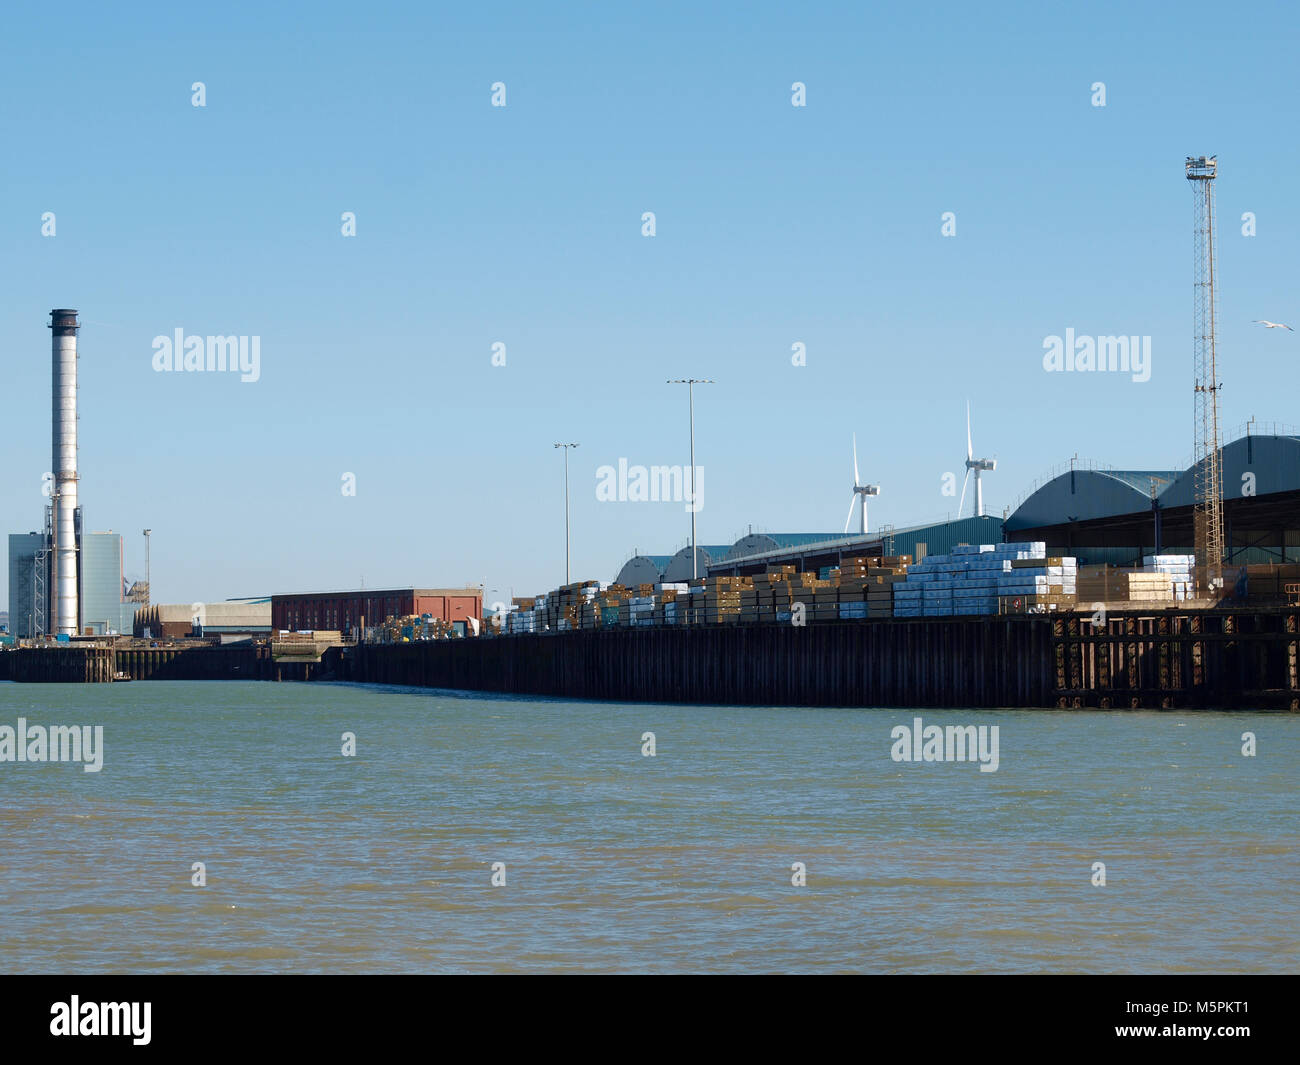 Photo de paysage de cheminée industrielle, des bâtiments et des conteneurs d'expédition à Shoreham beach, West Sussex, UK Banque D'Images